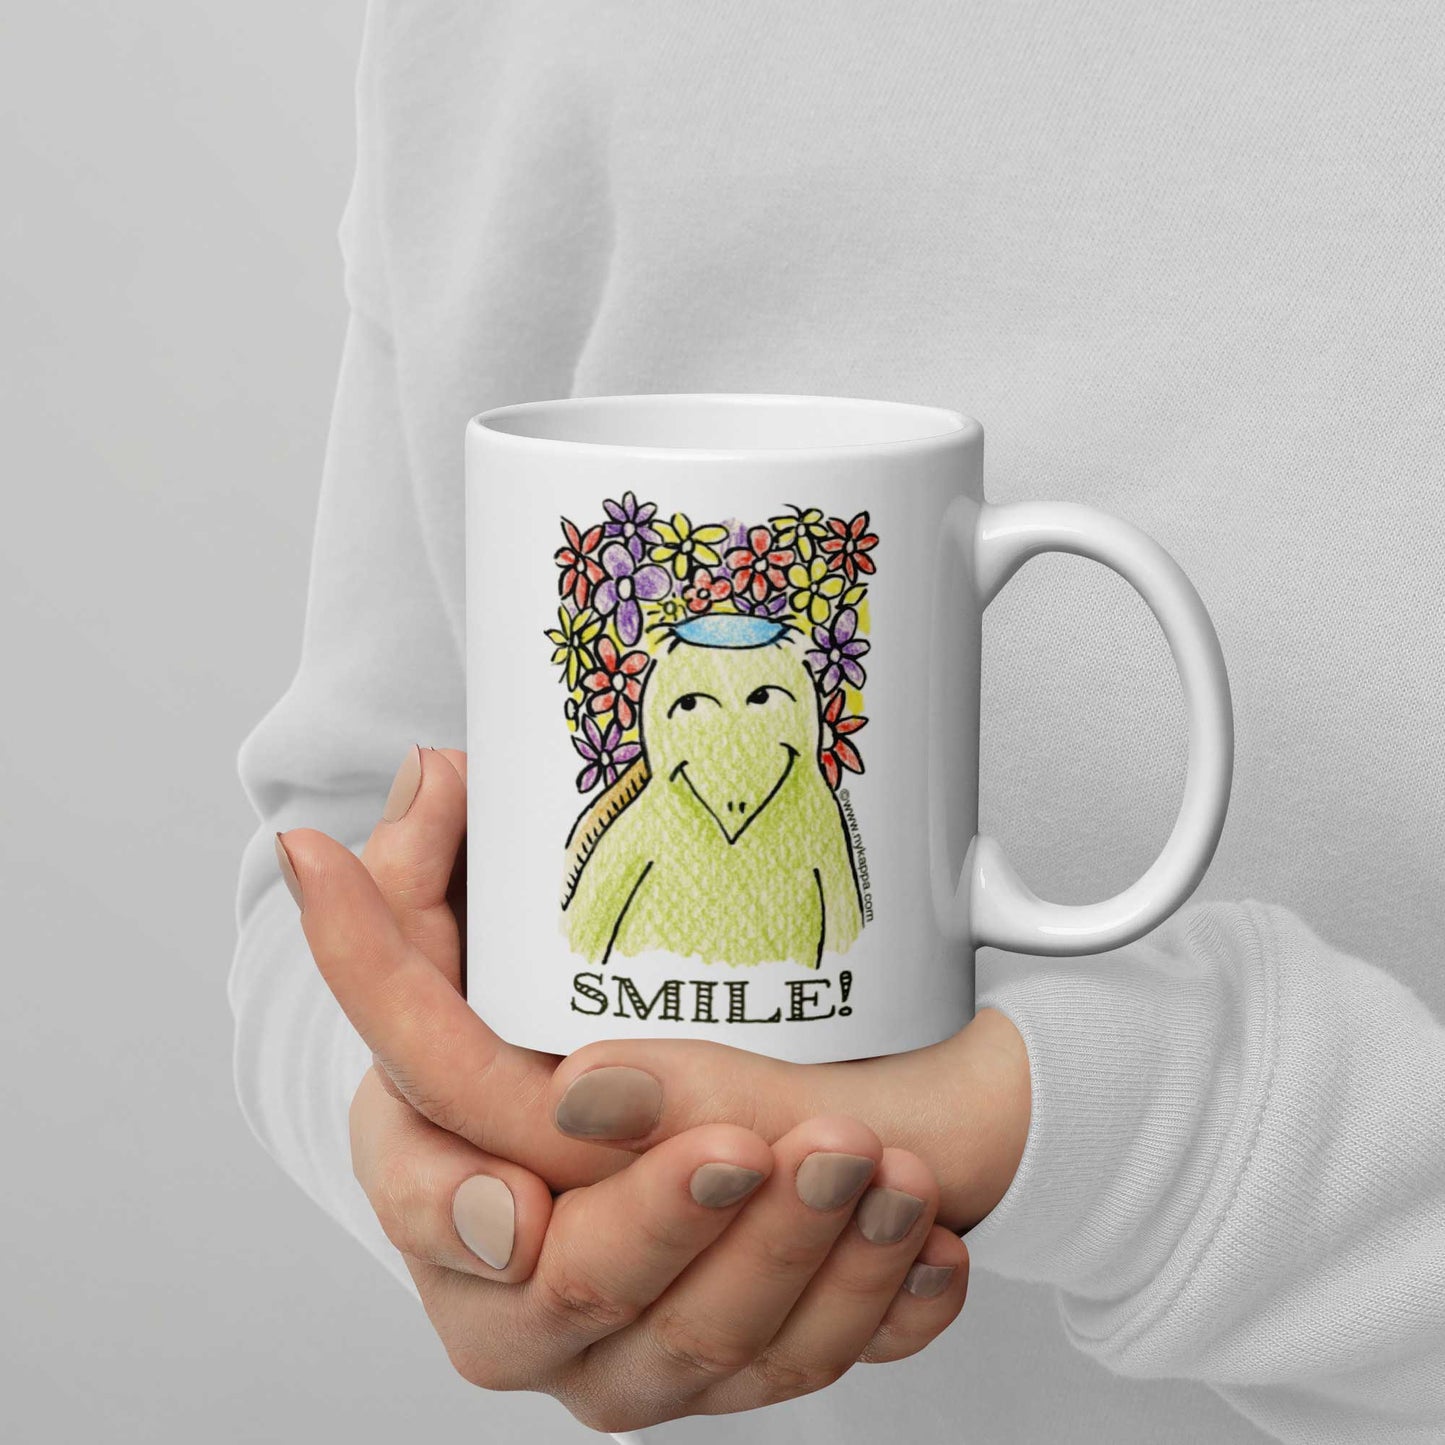 かわいいな NYのカッパ "SMILE!" NYの河童 かっぱ コーヒー マグカップ NY Kappa Smile Coffee Mug Cup Handle Right 2